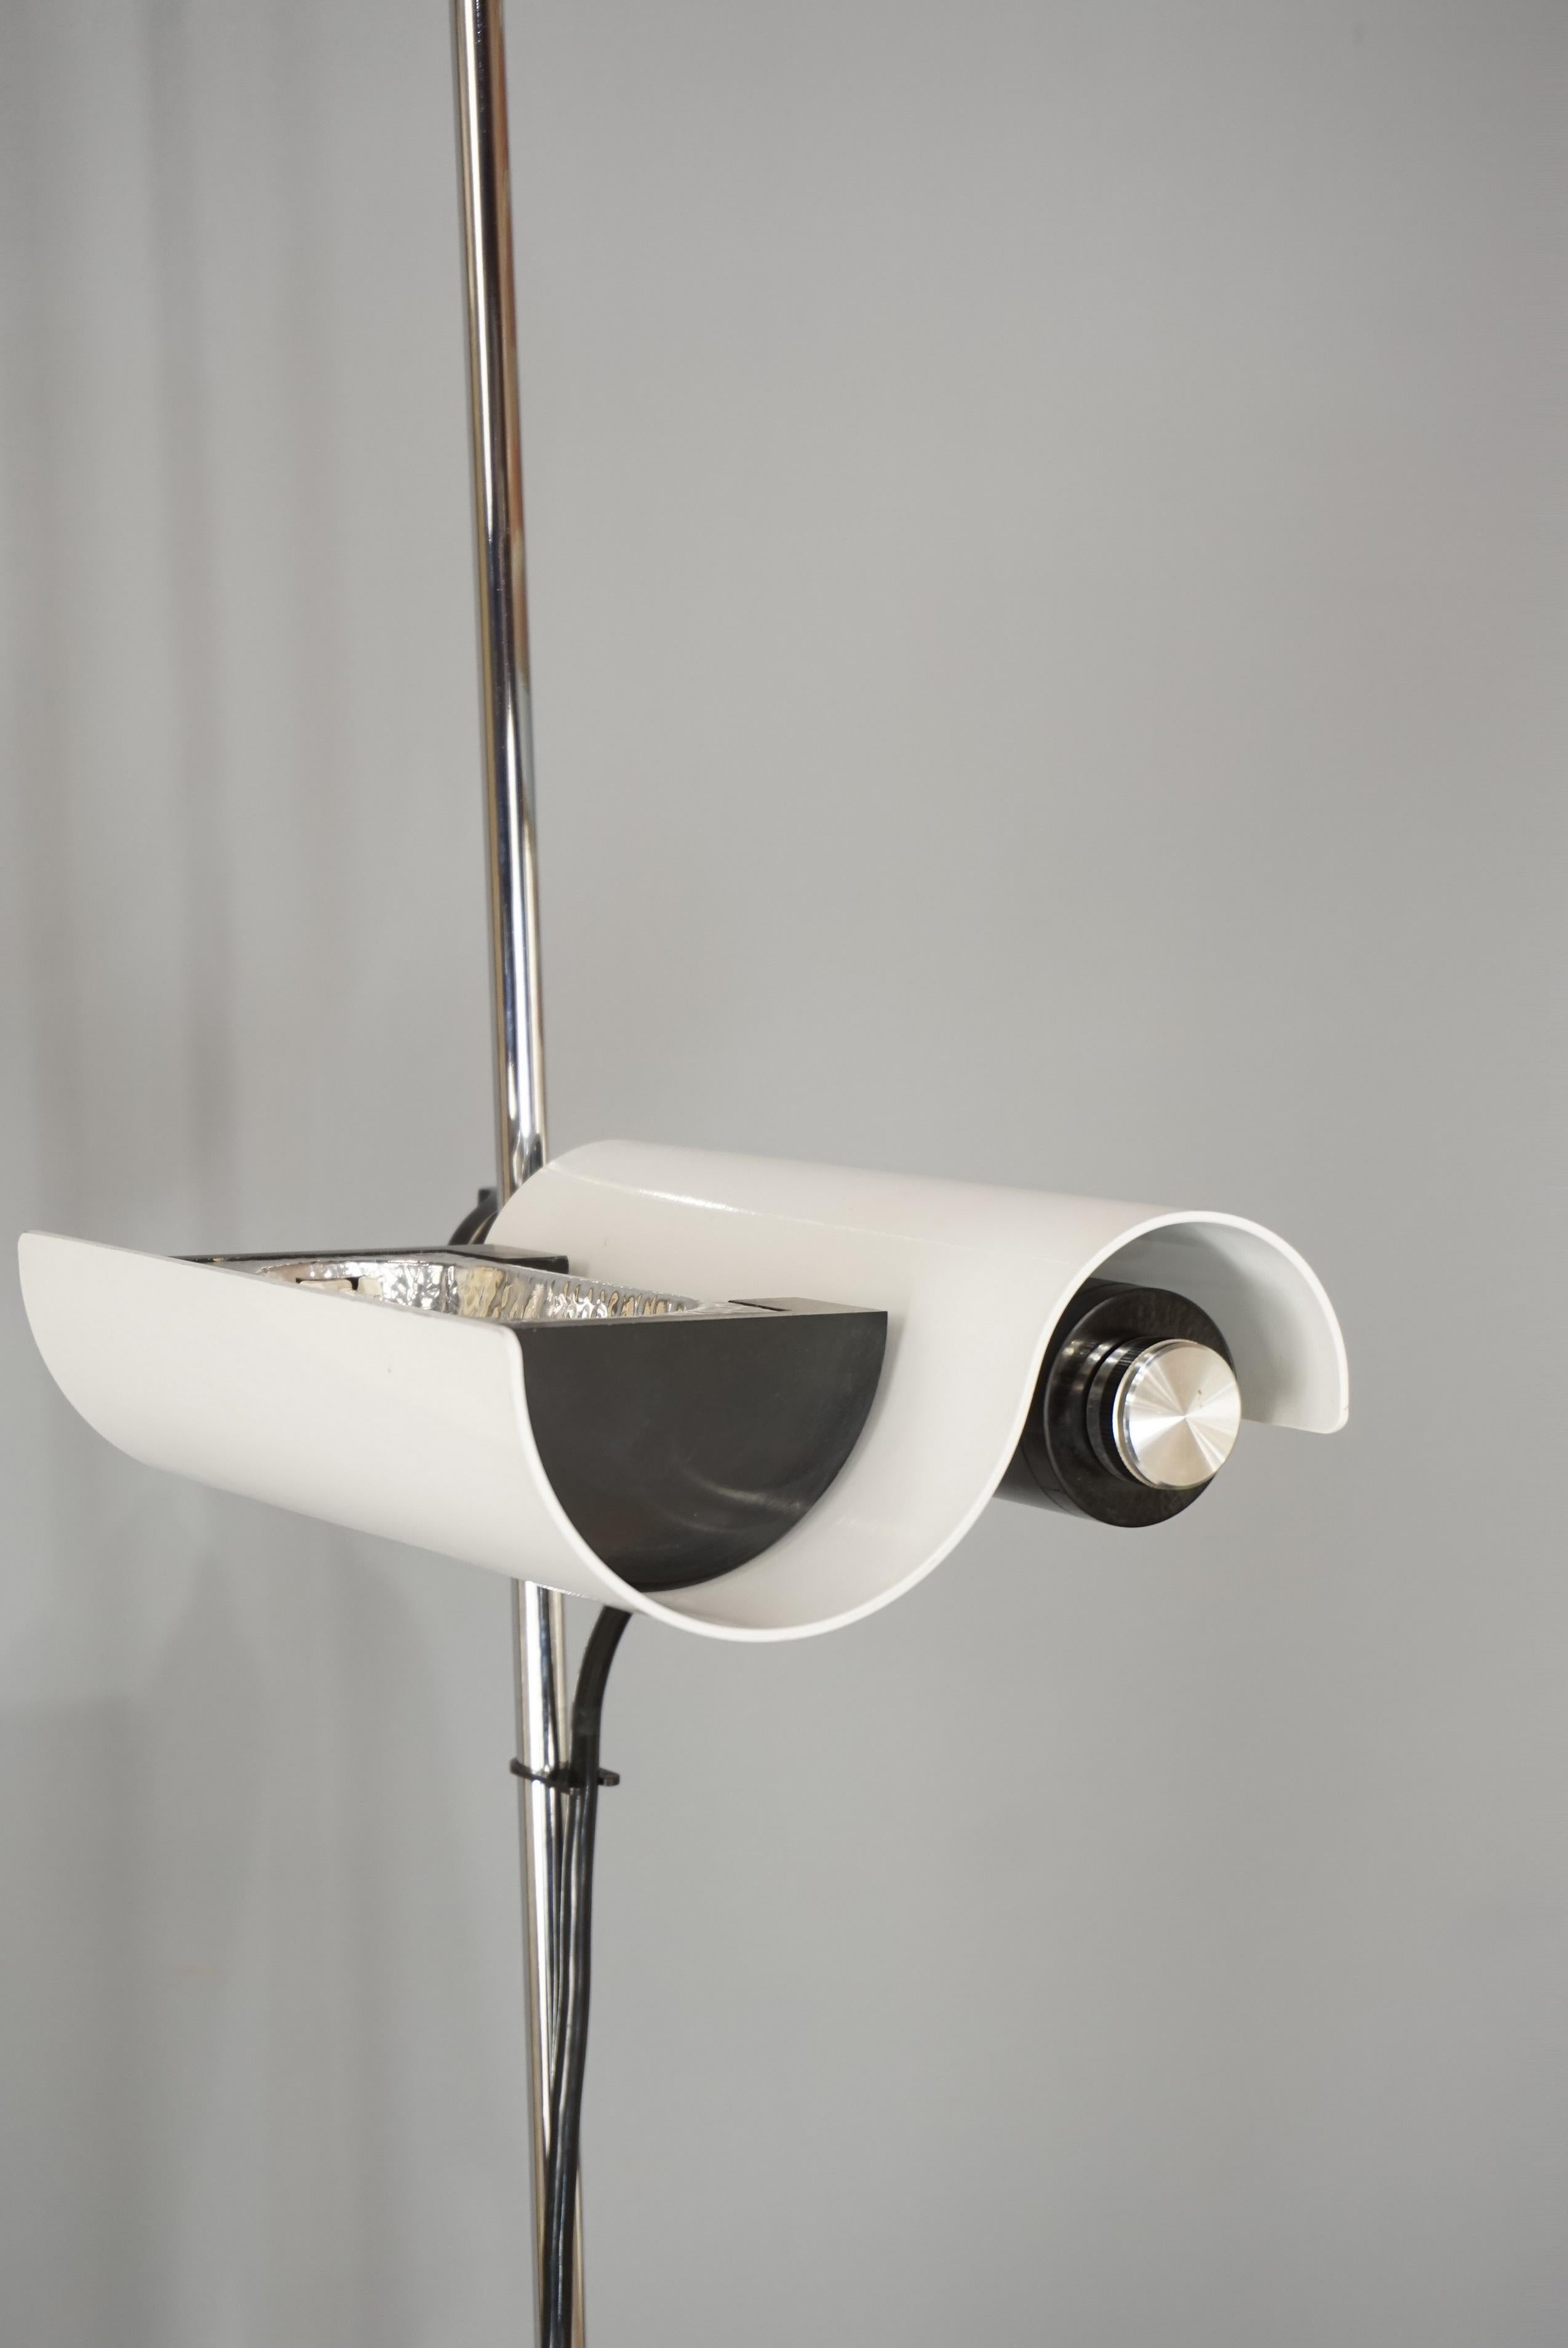 Vico Magistretti's DIM 333 White Floor Lamp Design from the 1970s  4